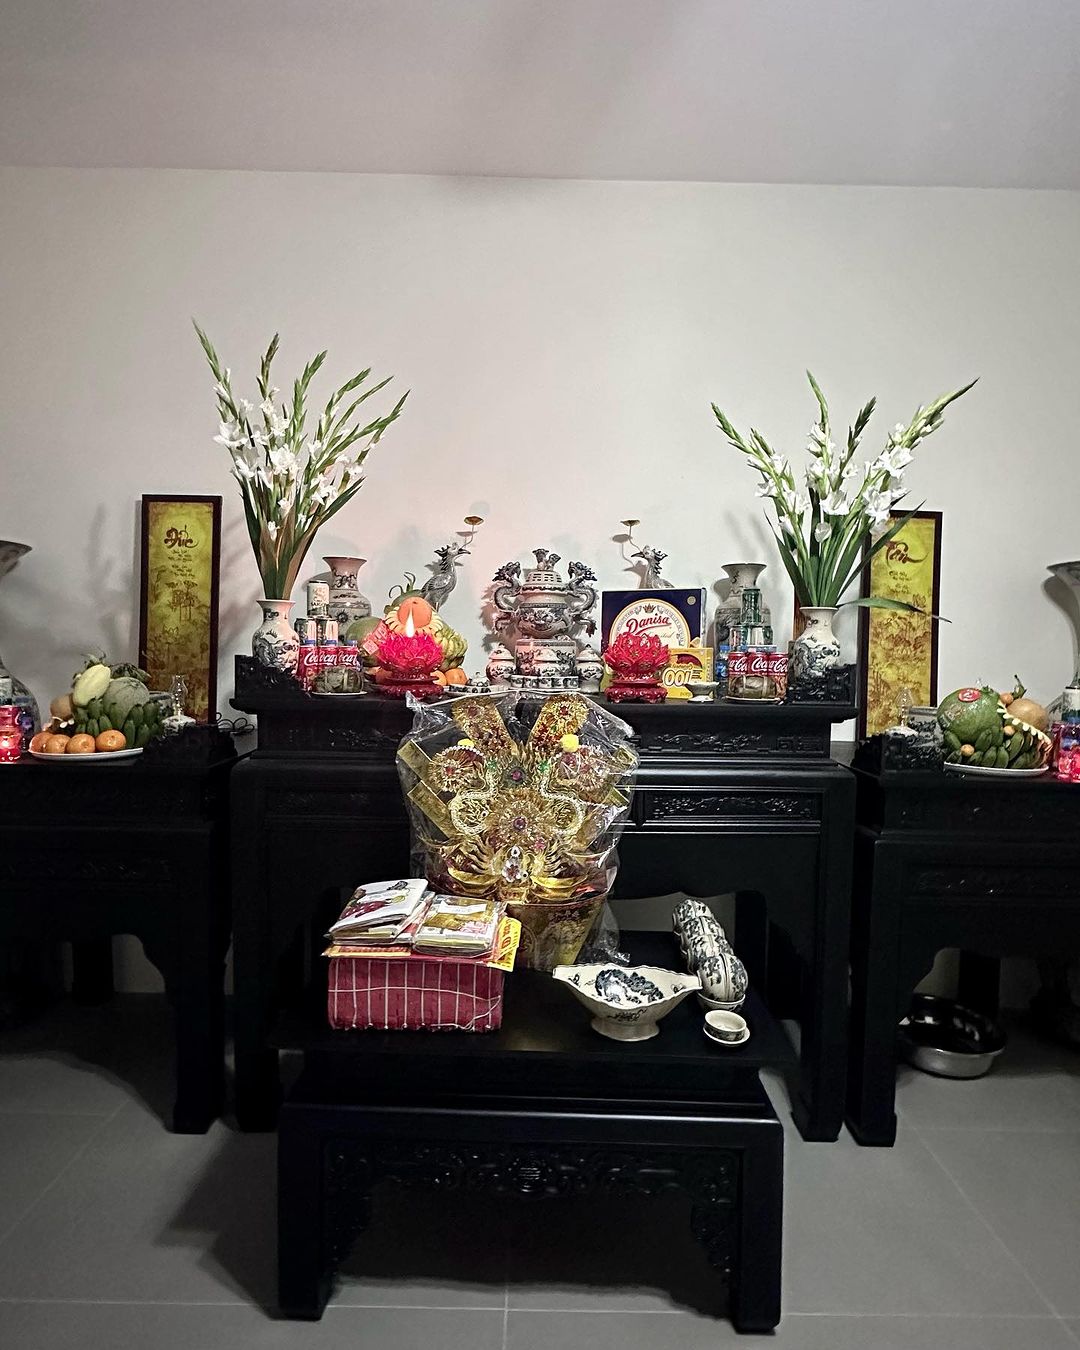 Quỳnh Lương ''unbox'' biệt thự mới đúng Mùng 1 Tết, khoe nhà rộng đến nỗi sắm nội thất không xuể